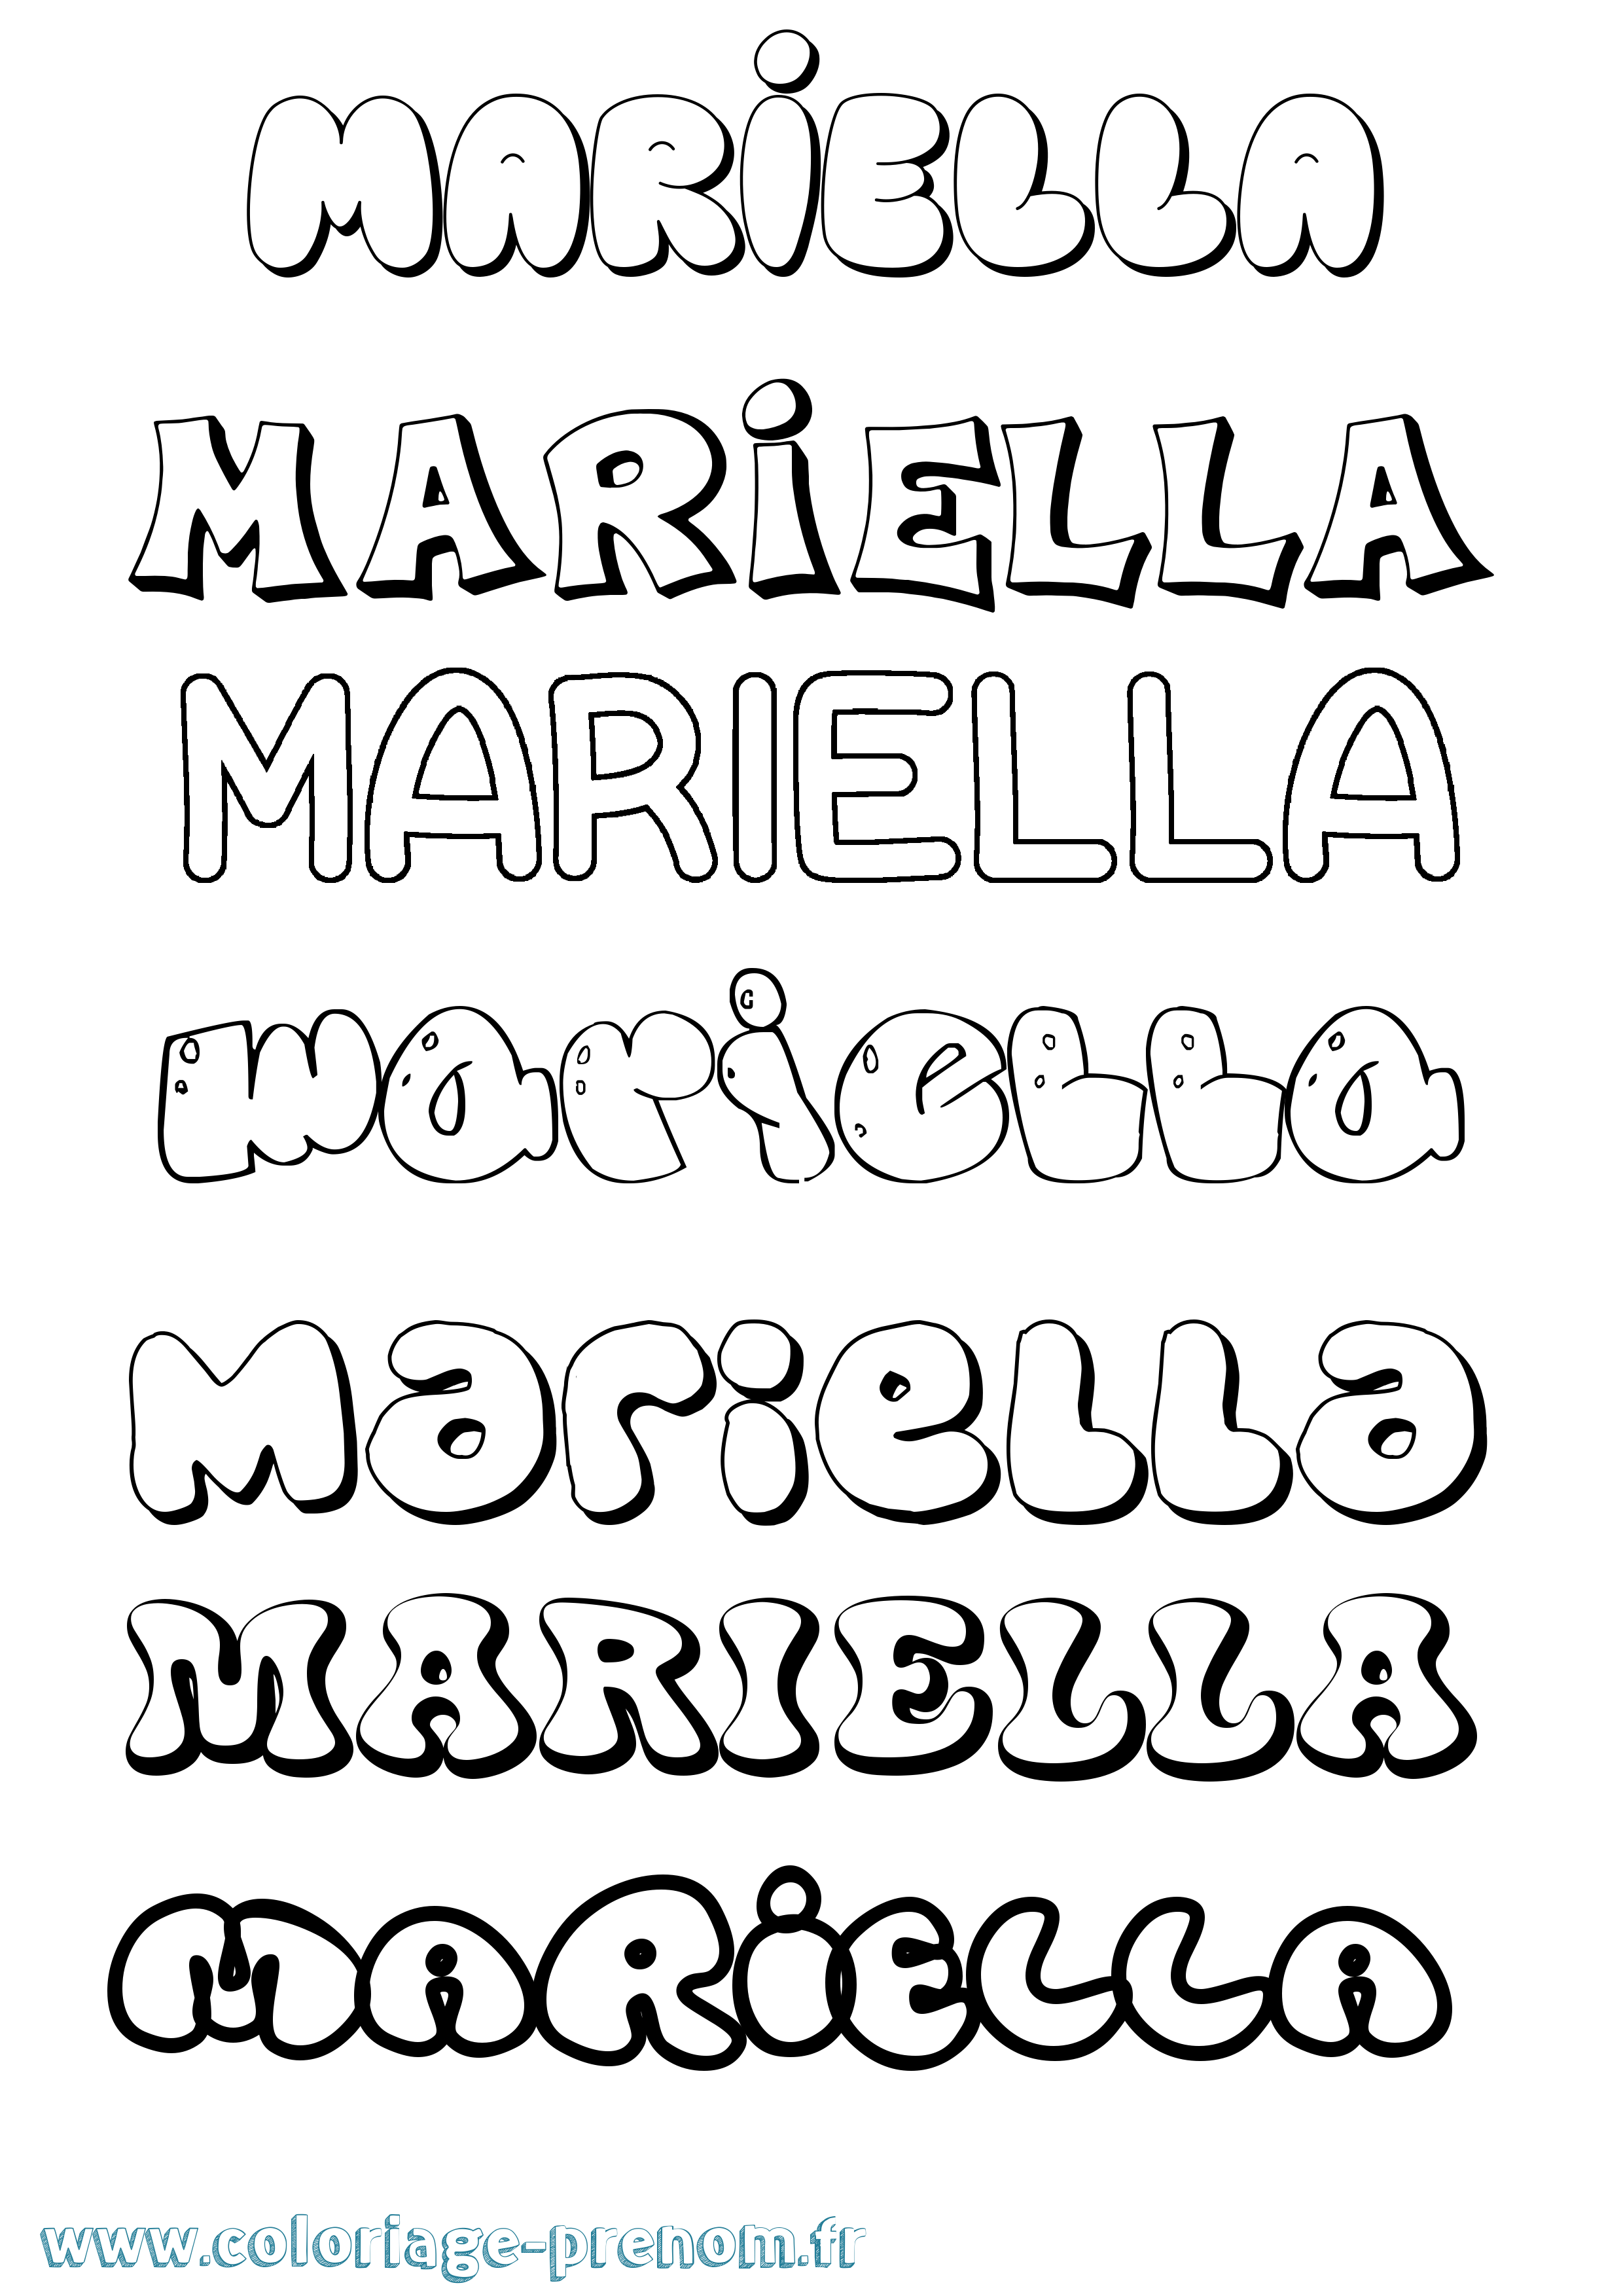 Coloriage prénom Mariella Bubble